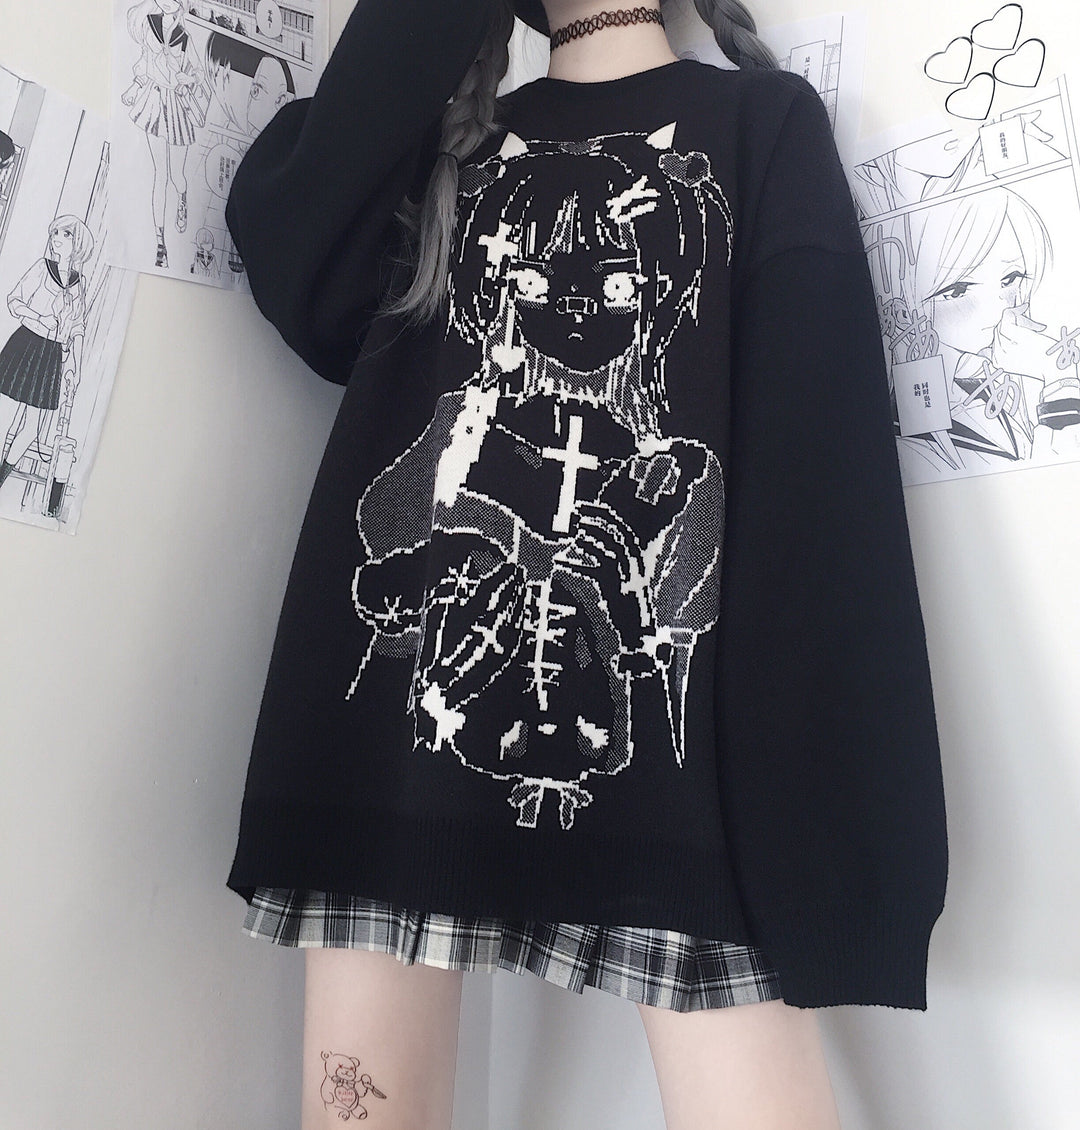 Cute Fashionable Anime Girl Oshare - Fun Japan (Dark) / Unisex